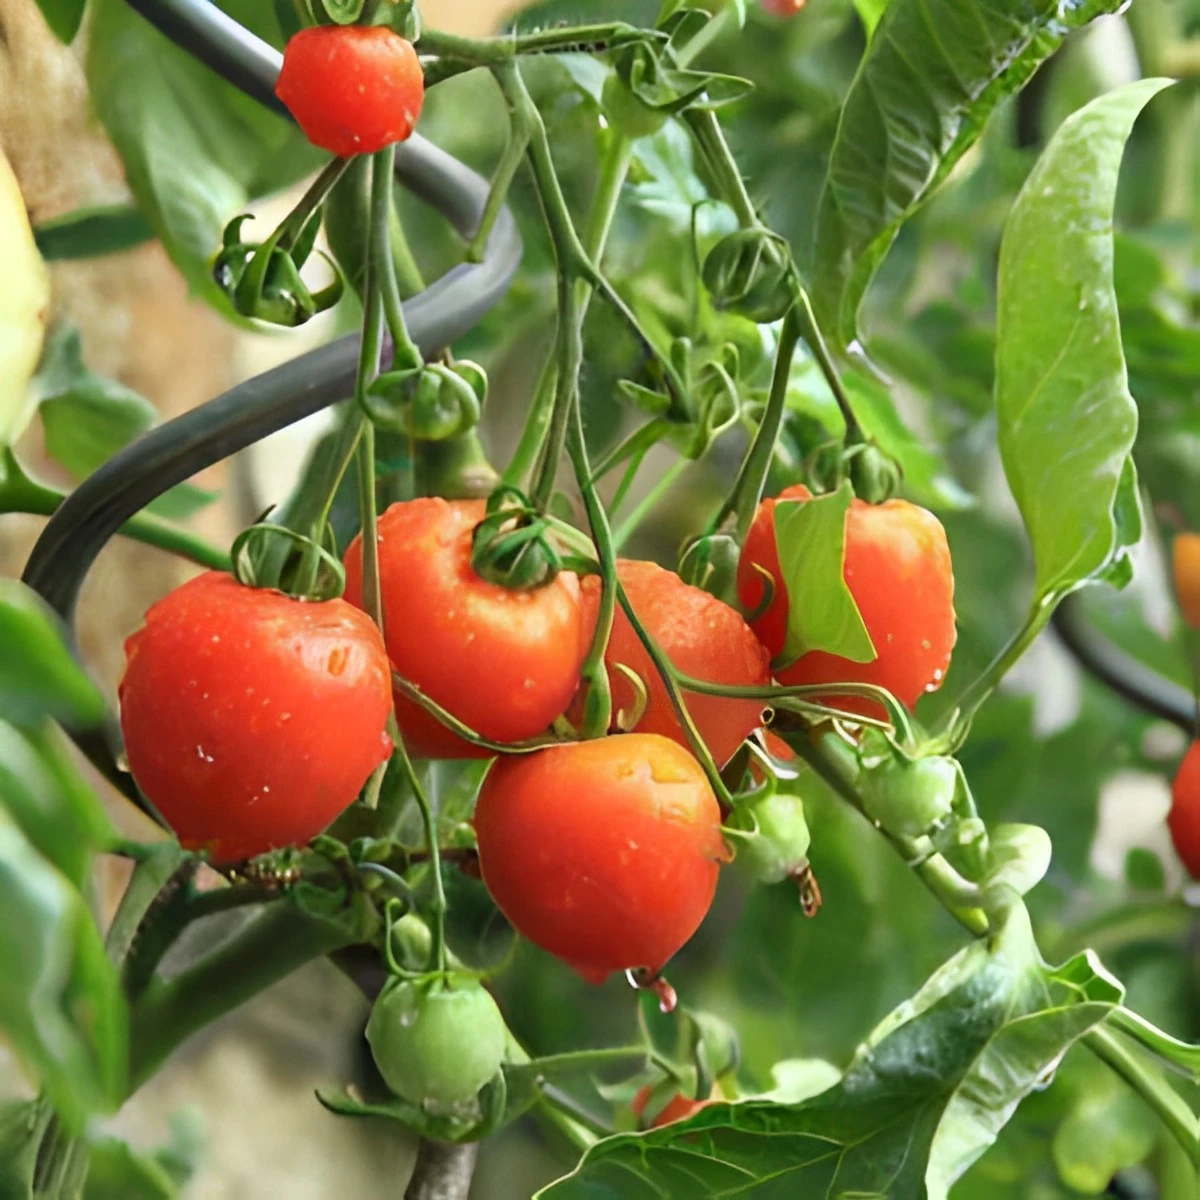 six tomates rouges taille moyenne et une petite pretes a cueillir avec d autres mini tomates encore vertes